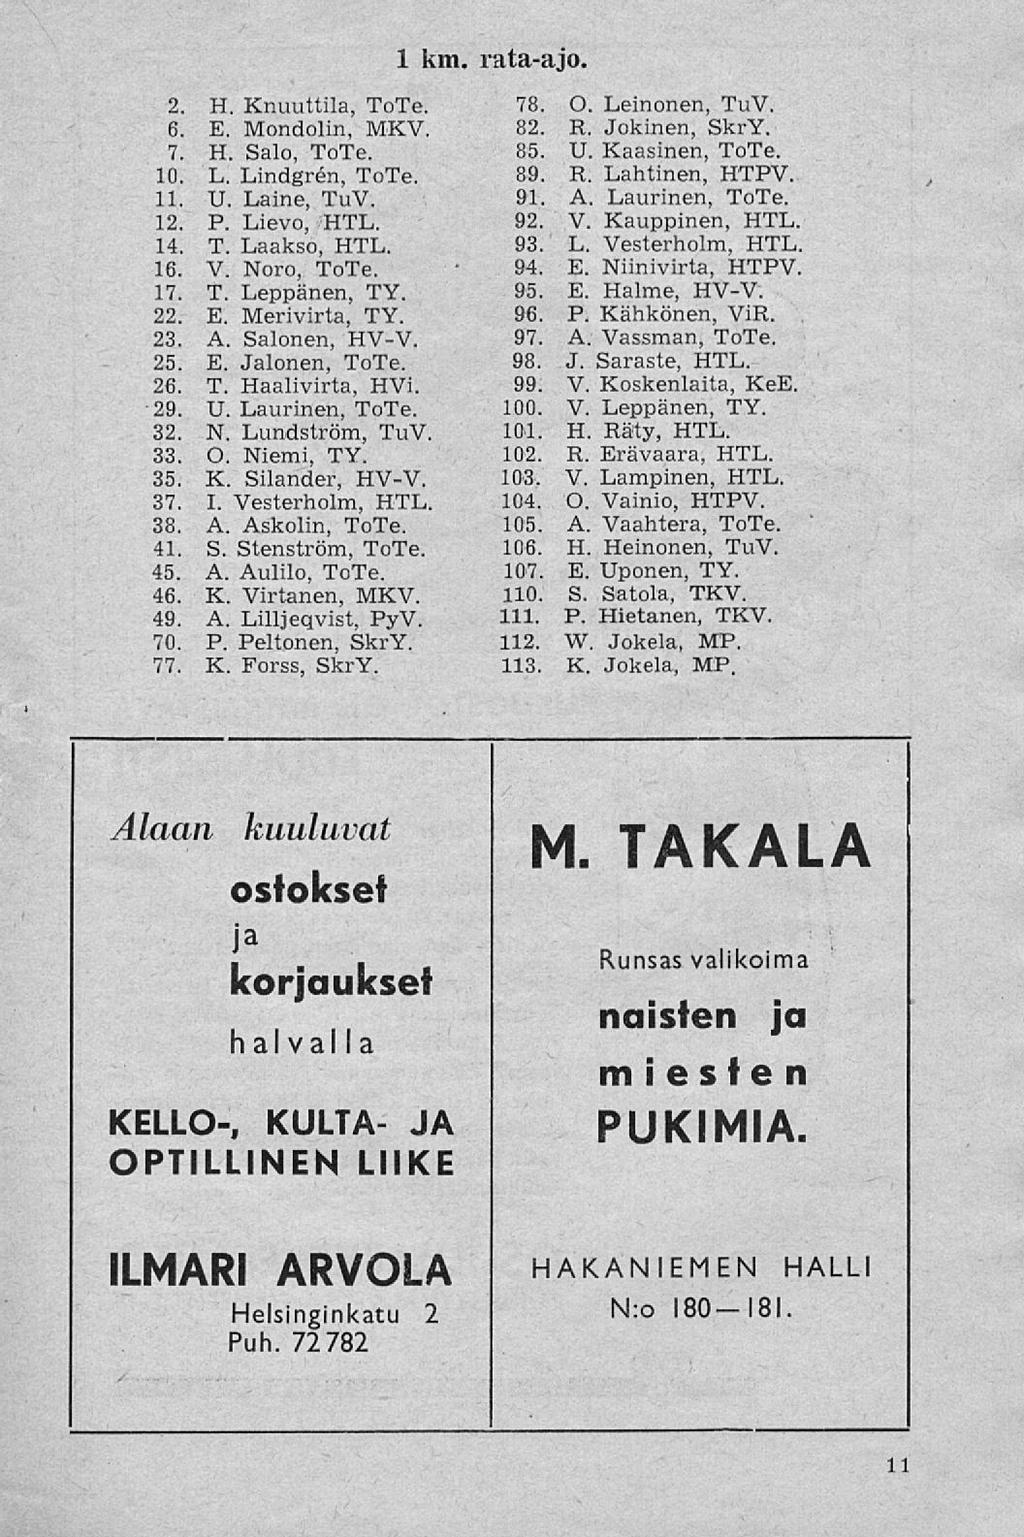 2. H. Knuuttila, ToTe. 6. E. Mondolin, MXV. 7. H. Salo, ToTe. 10. L. Lindgren, ToTe. 11. U. Laine, TuV. 12. P. Lievo, HTL. 14. T. Laakso, HTL. 16. V. Noro, ToTe. 17. T. Leppänen, TY. 22. E. Merivirta, TY.